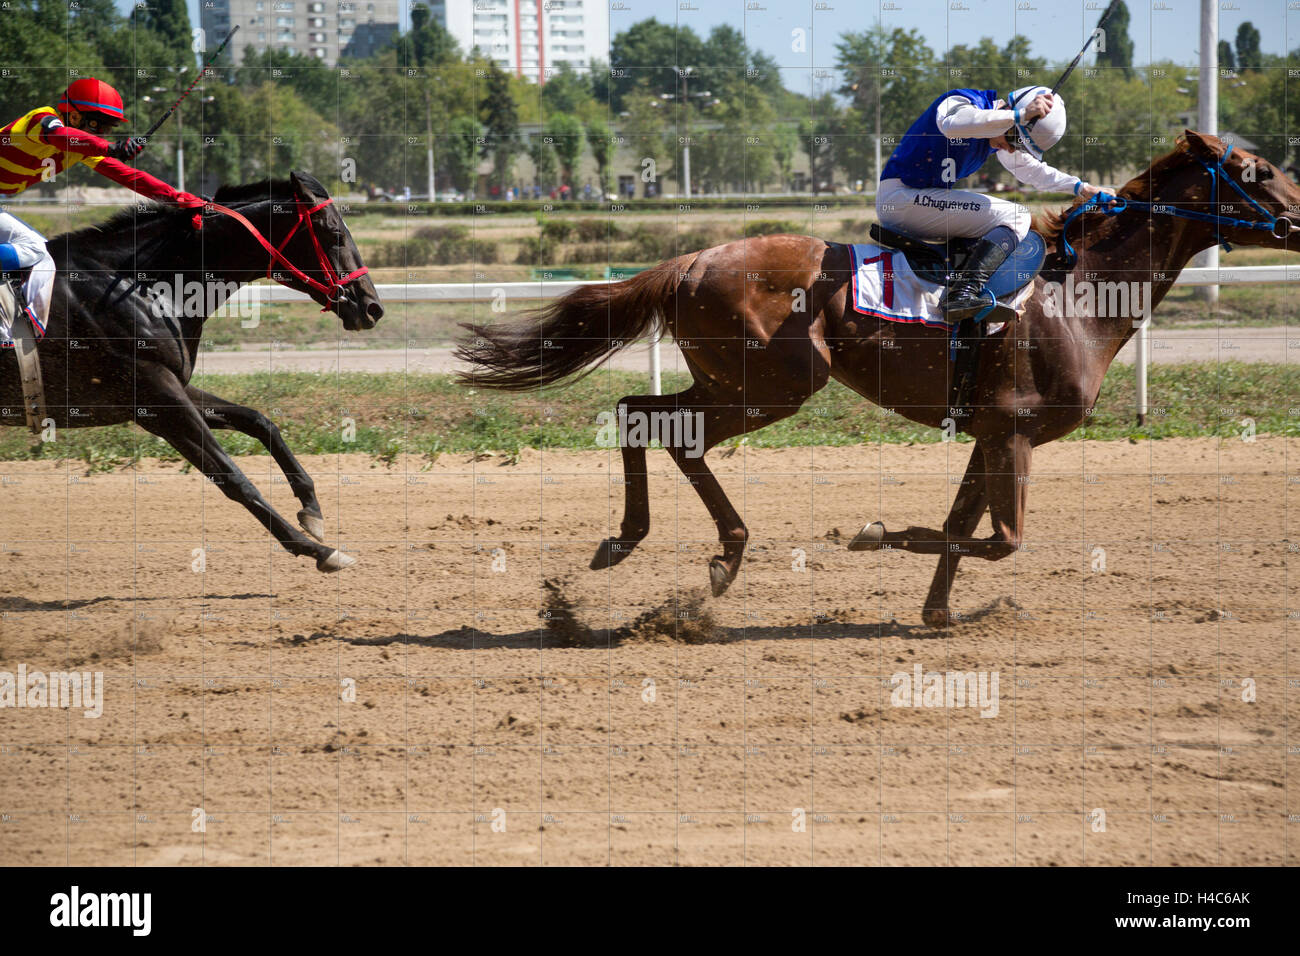 Les participants des courses de chevaux à l'Hippodrome central de Moscou, Russie Banque D'Images